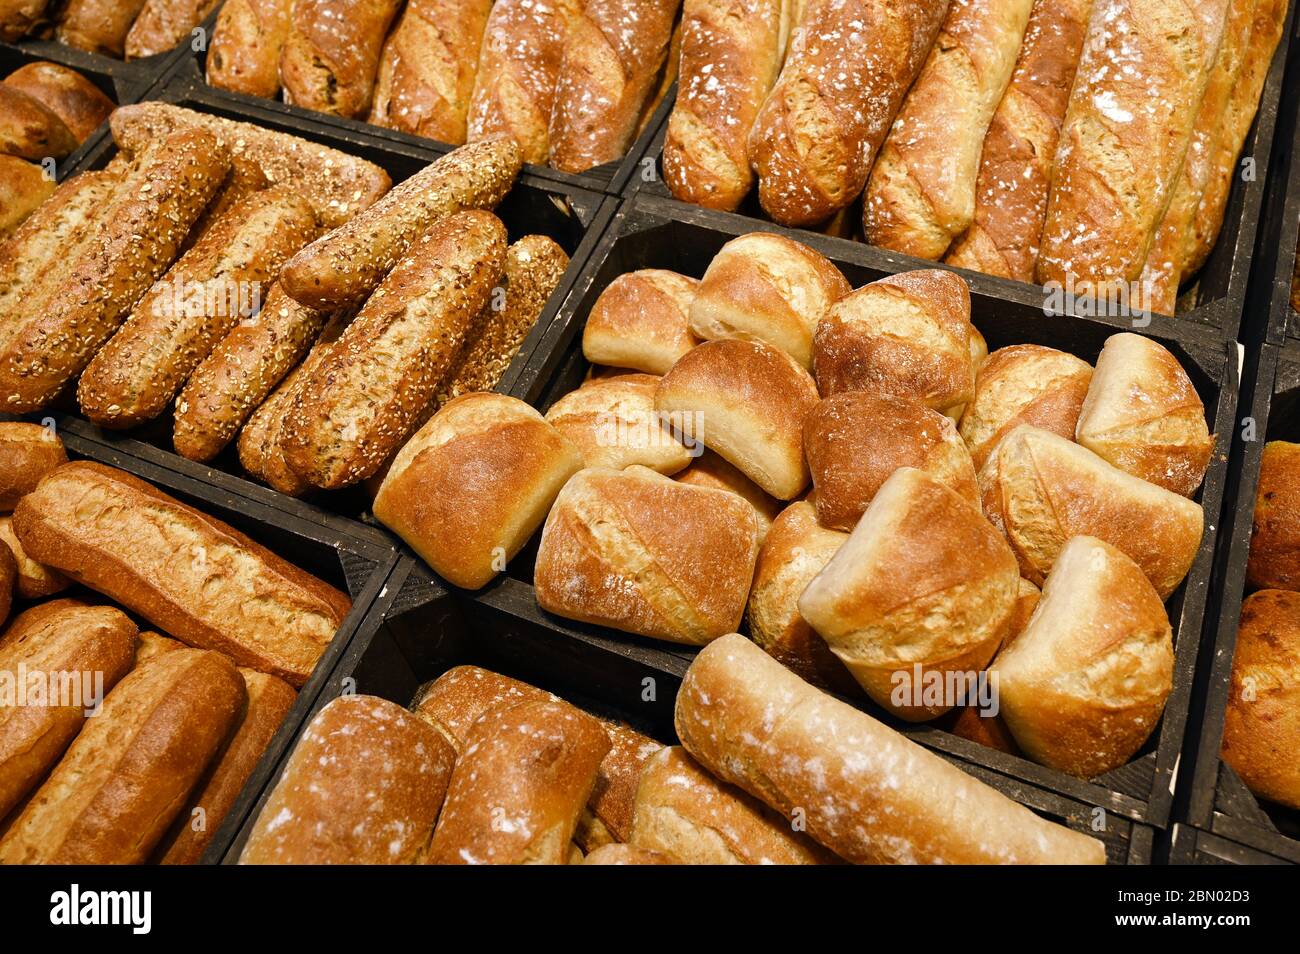 Présentation de divers pains levain dans un magasin Banque D'Images